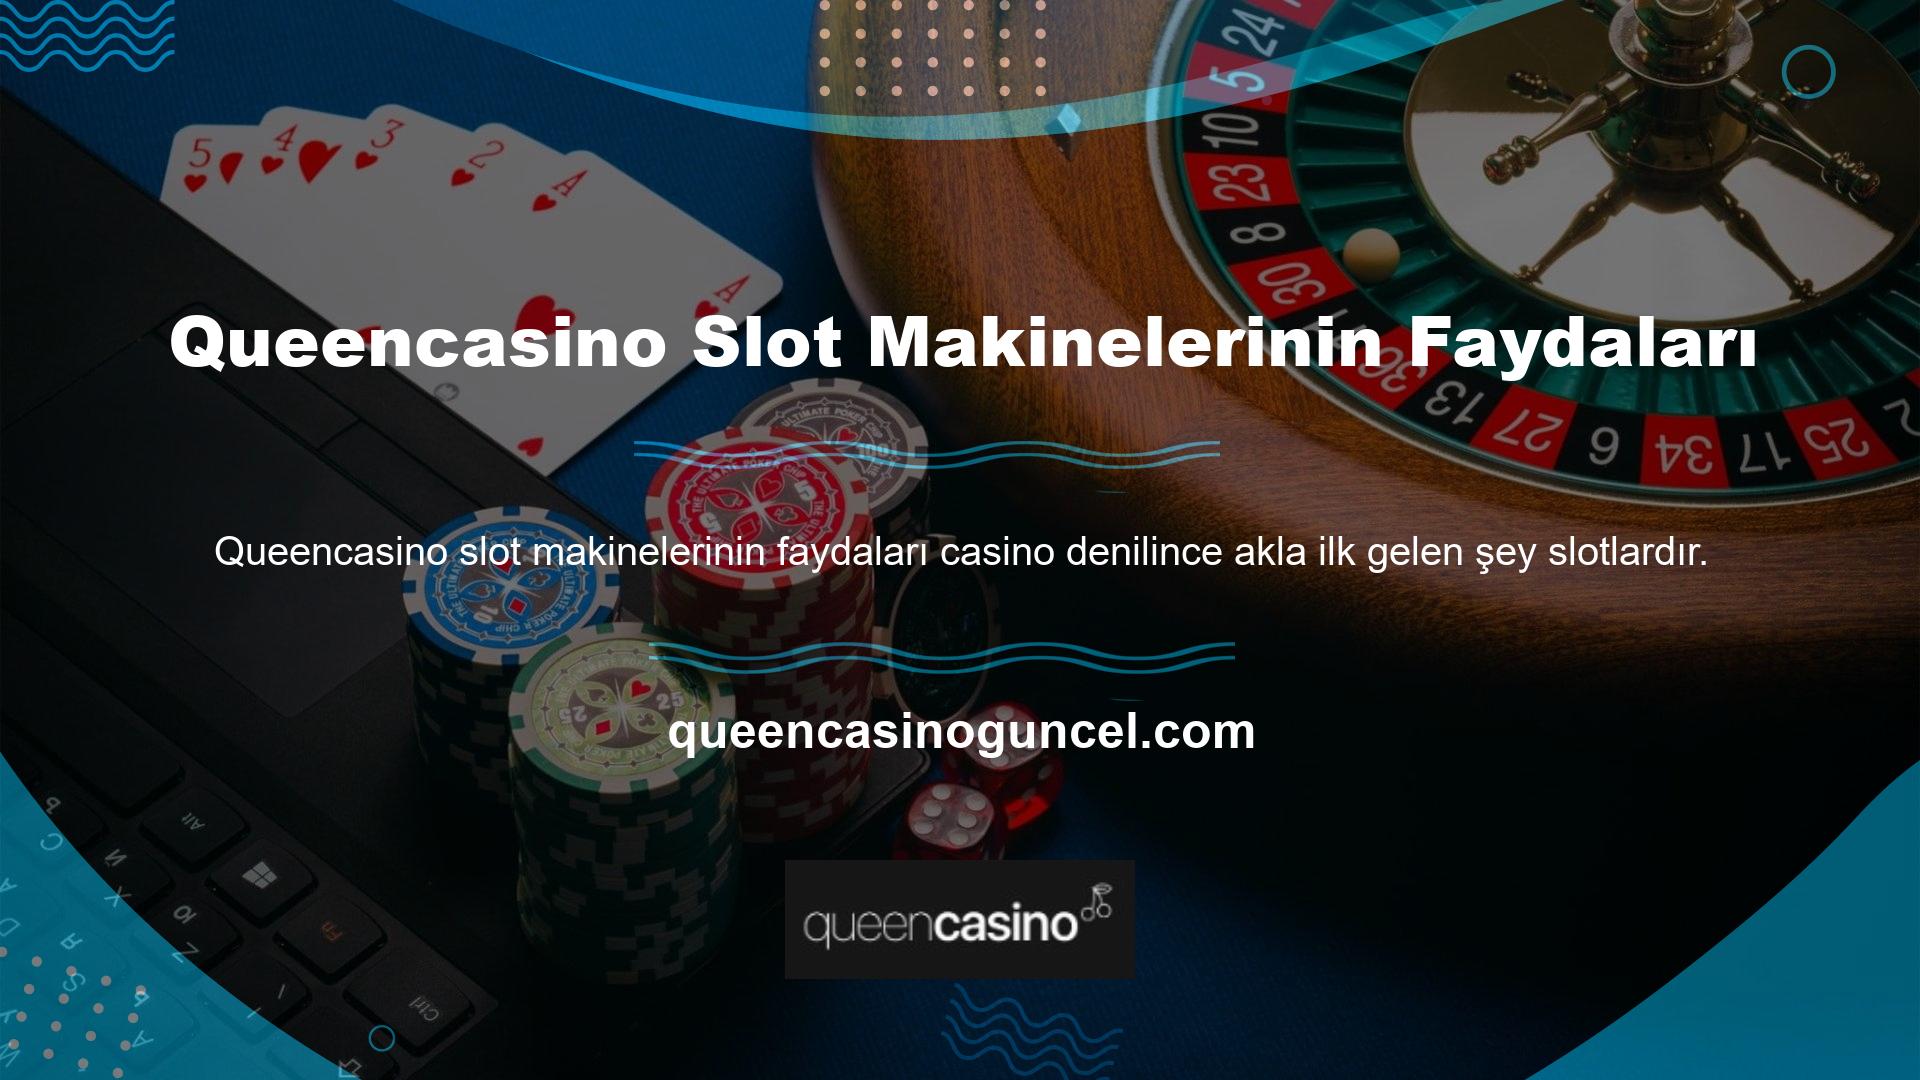 Bu siteyi kullananlar Queencasino slotlarına ilgi duyduklarını anlıyor ve faydaları hakkında bilgi arıyorlar